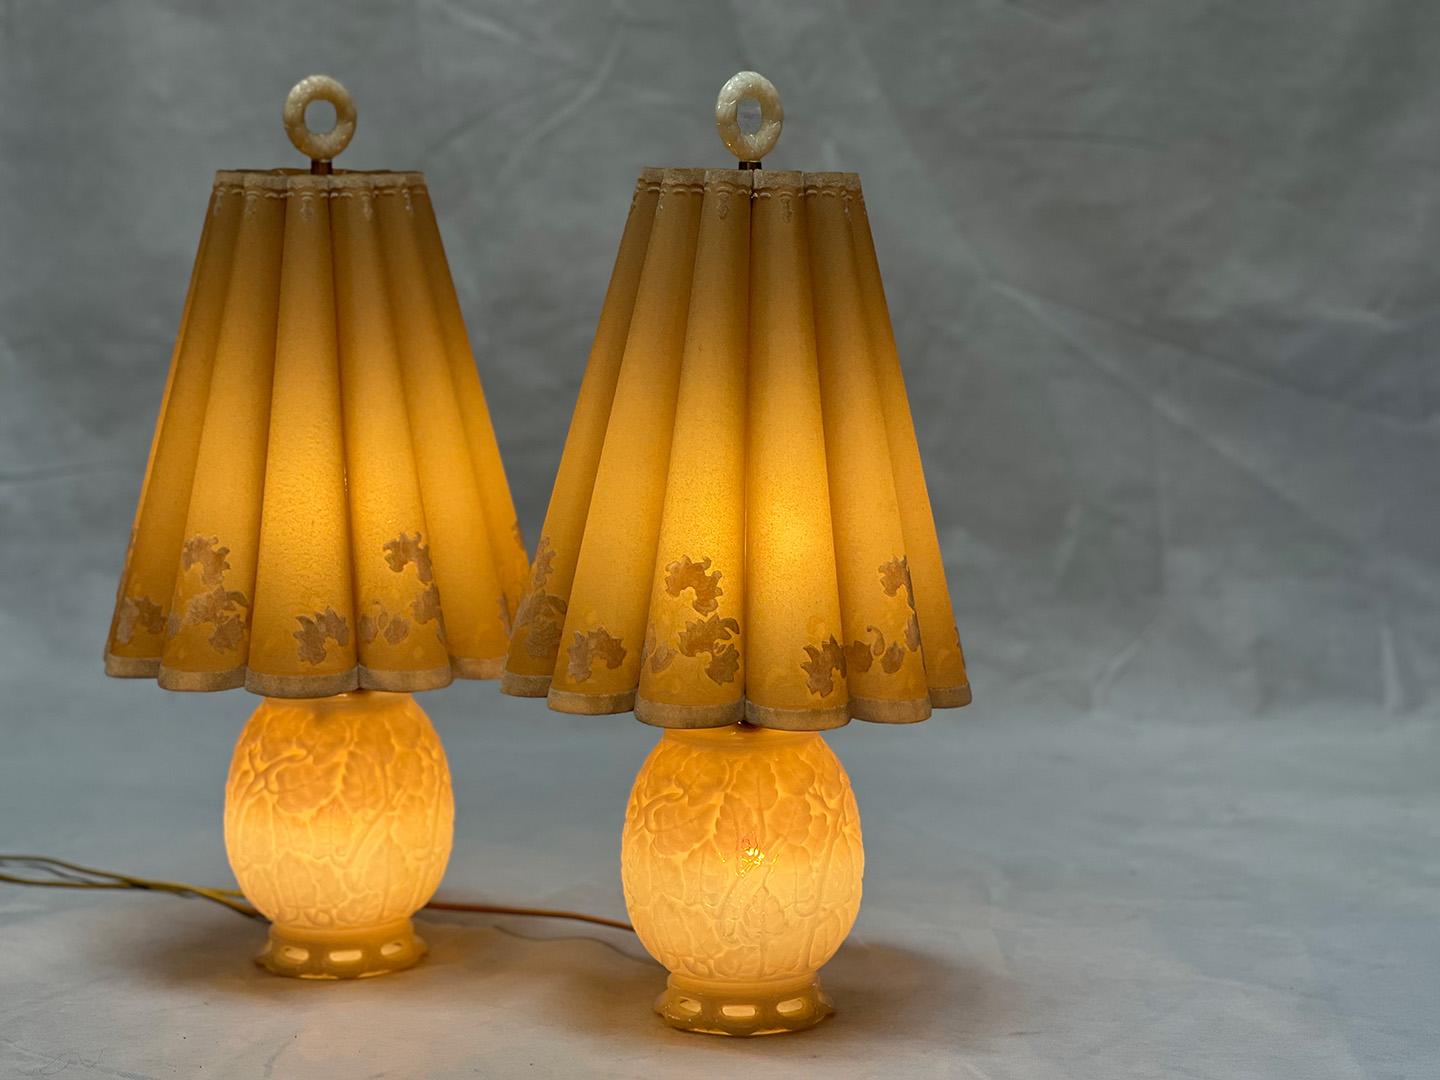 cast glass lamps